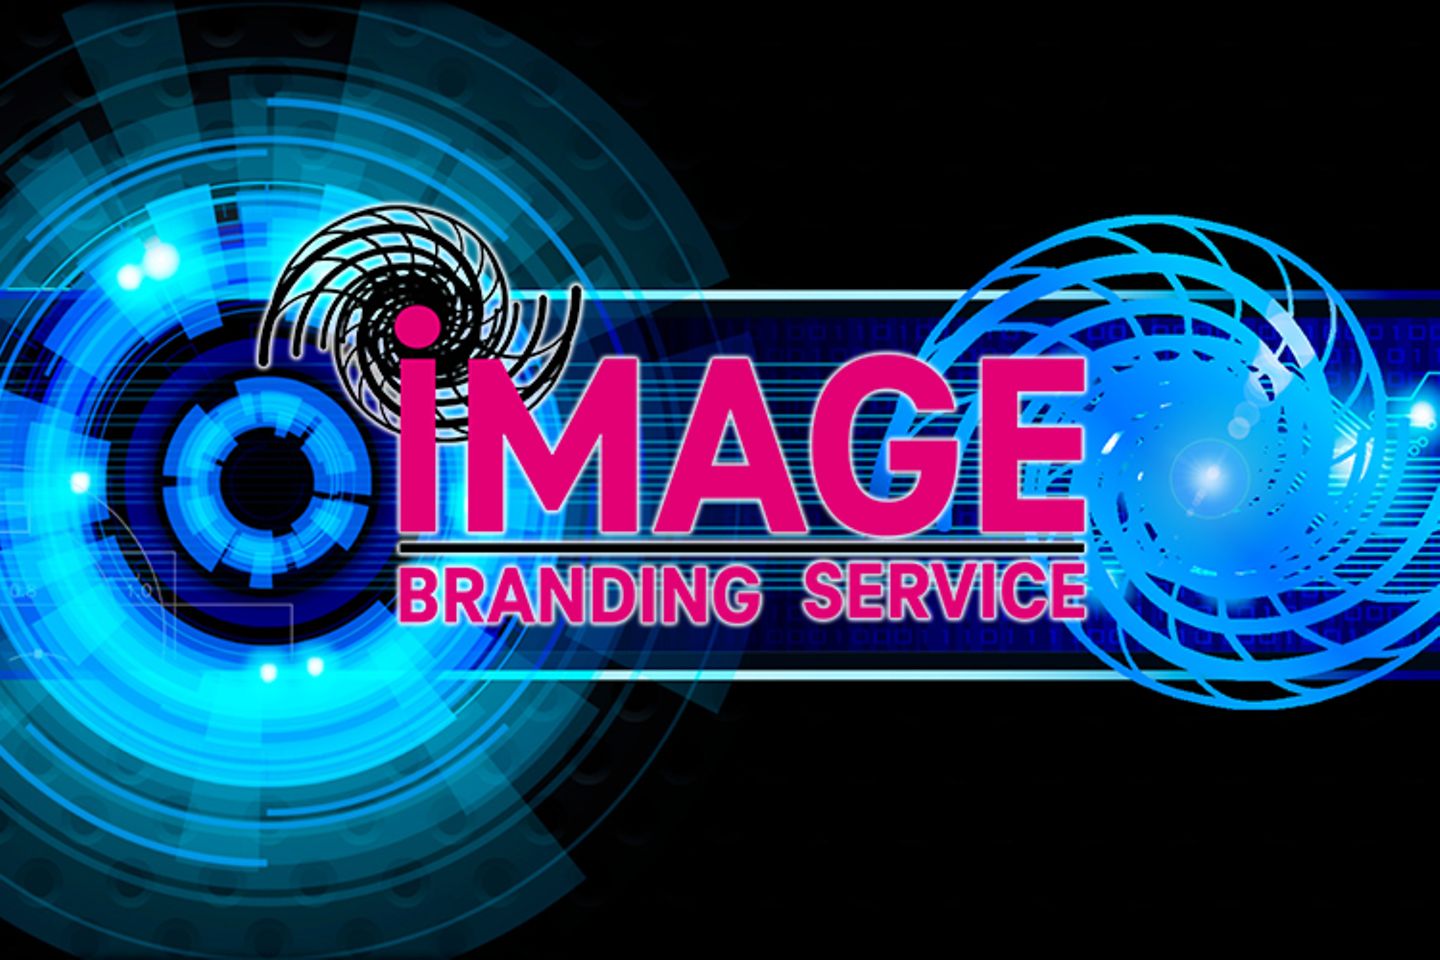 Logo des Image Branding Service von T-Systems